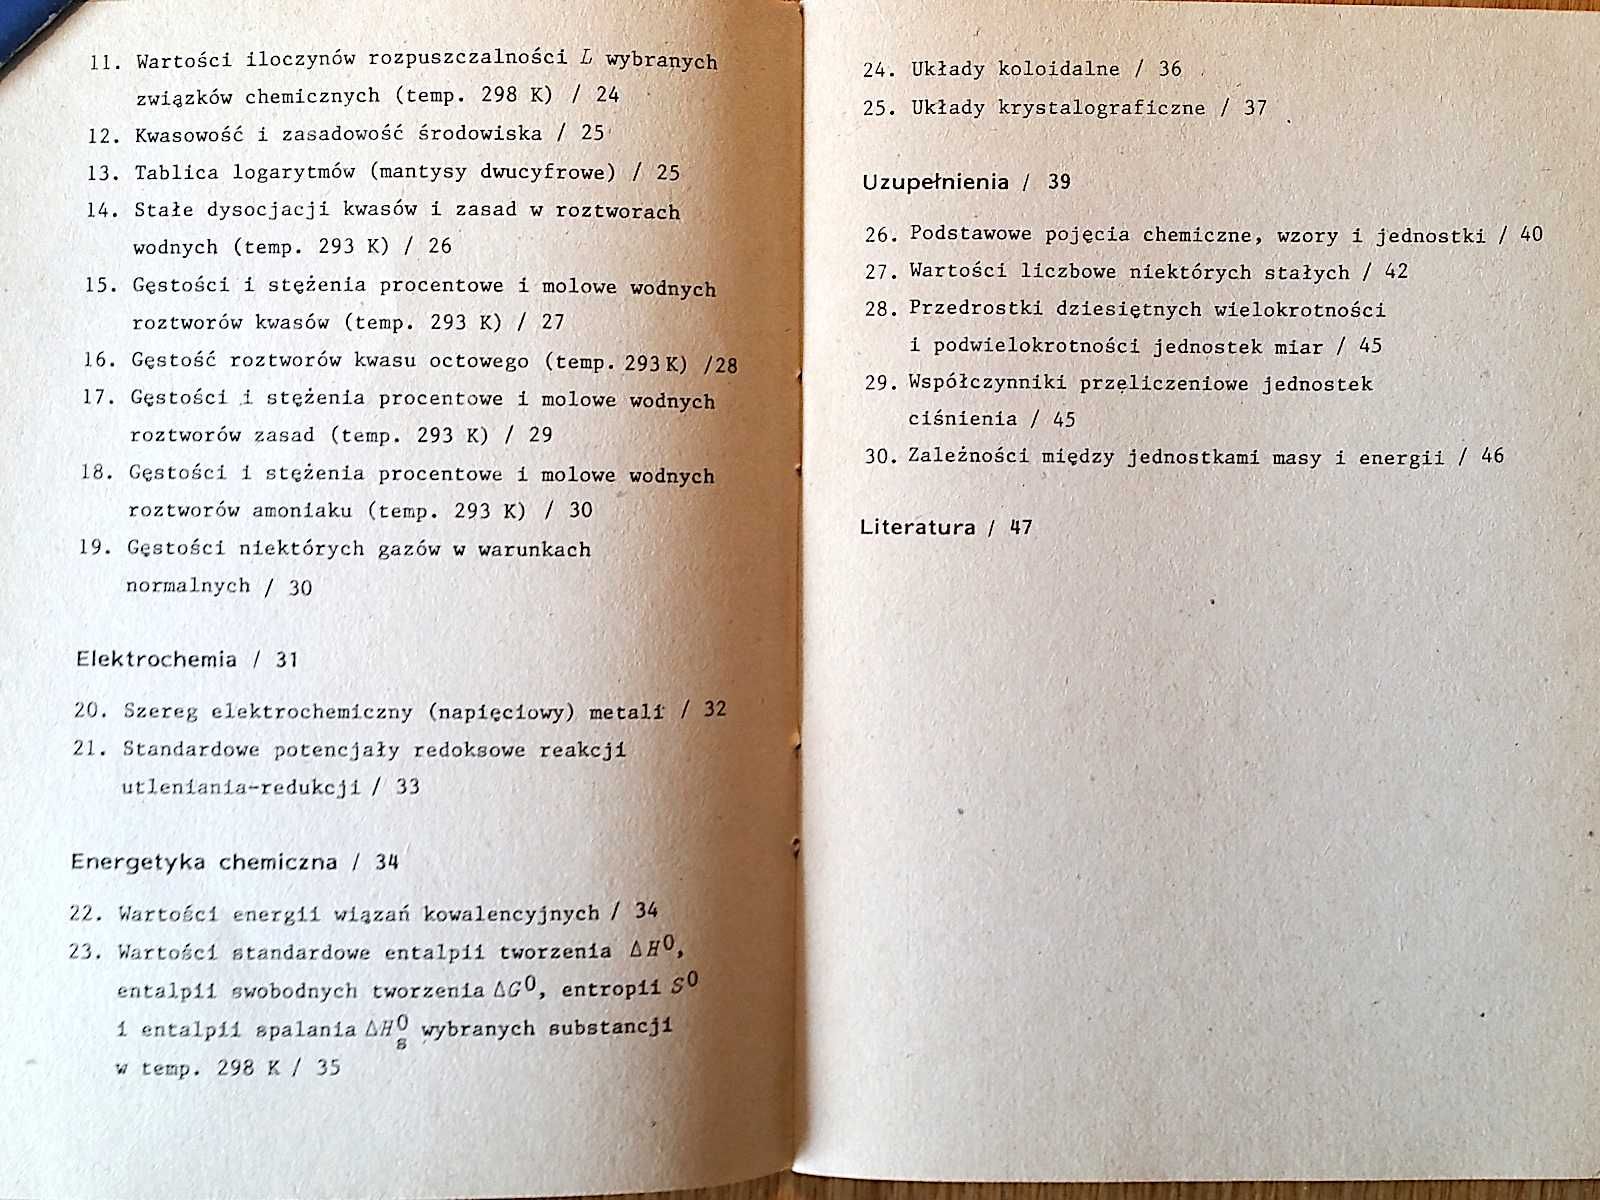 CHEMIA: "Tabele chemiczne dla uczniów" (tablice chemiczne) WNT 1990